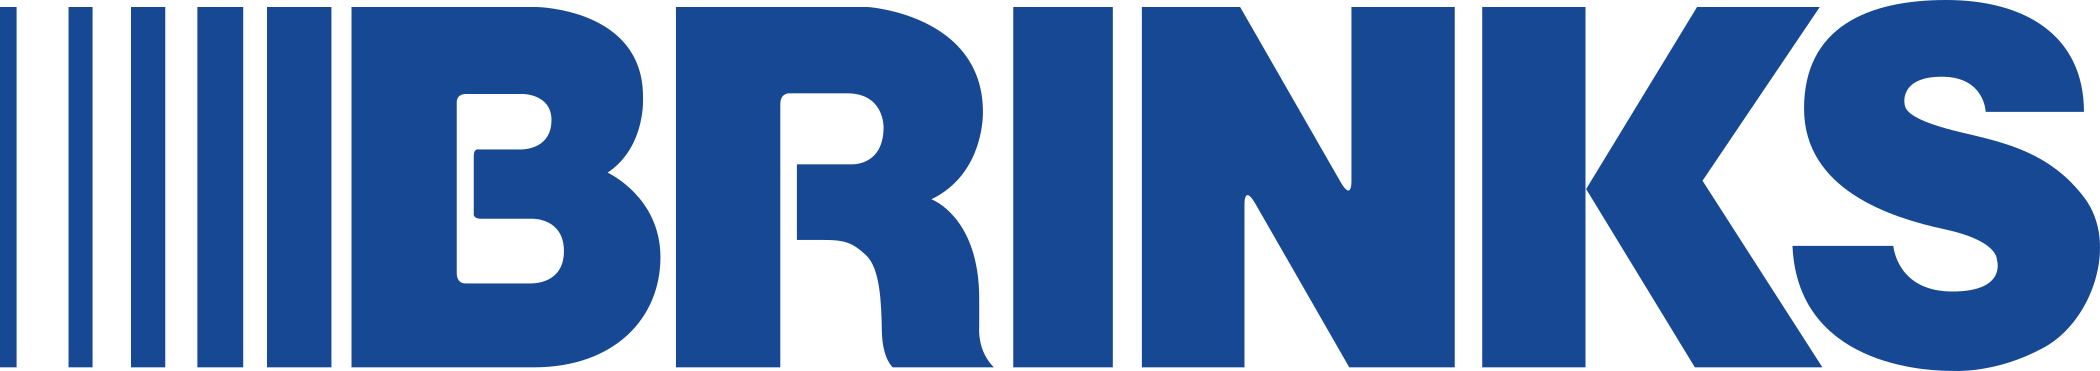 BRINKS Logo.